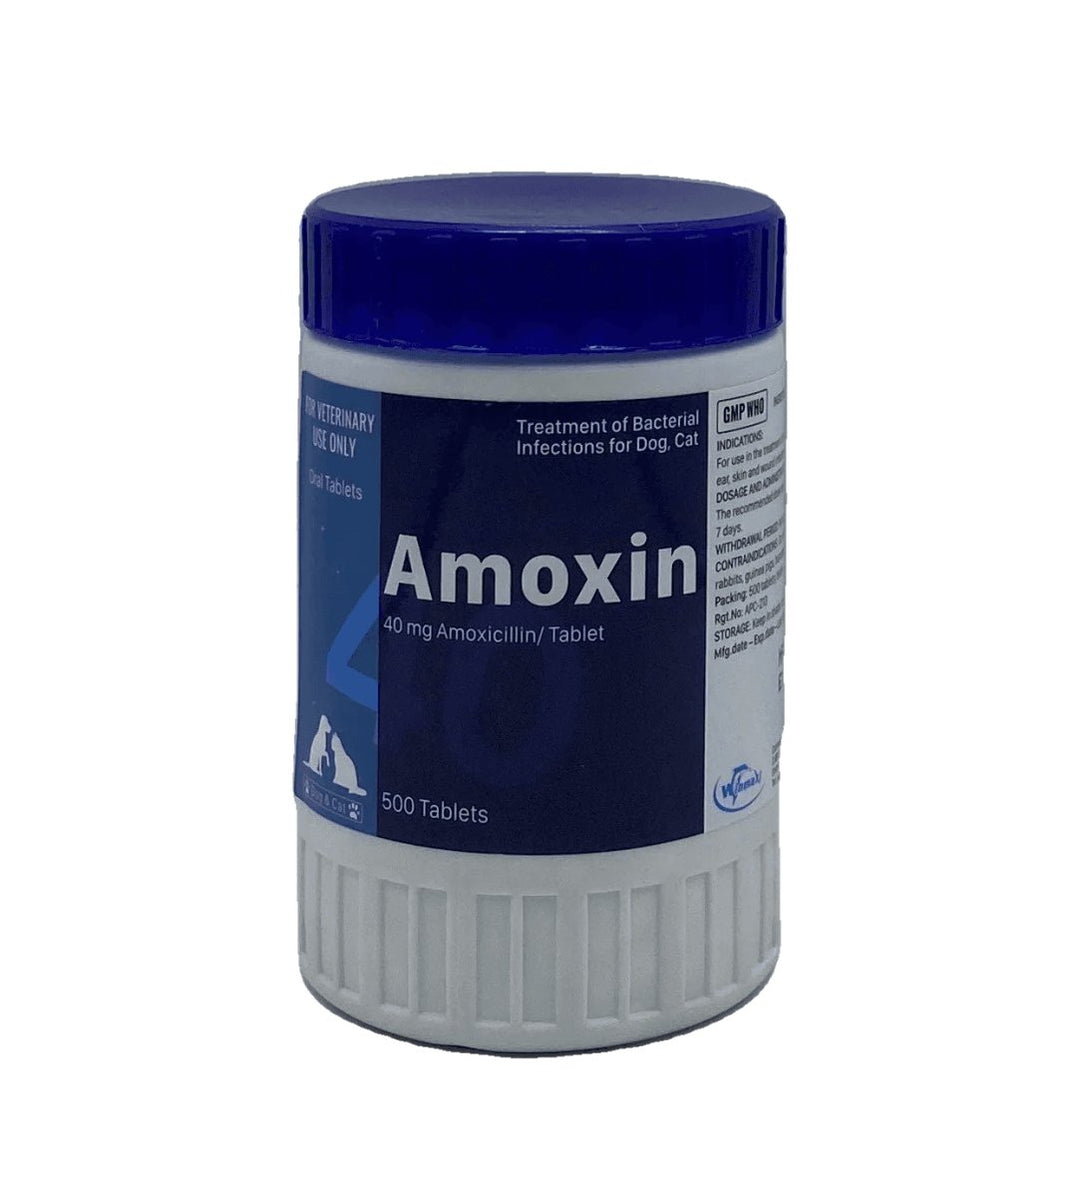 Amoxin 500 tablets - Shopivet.com